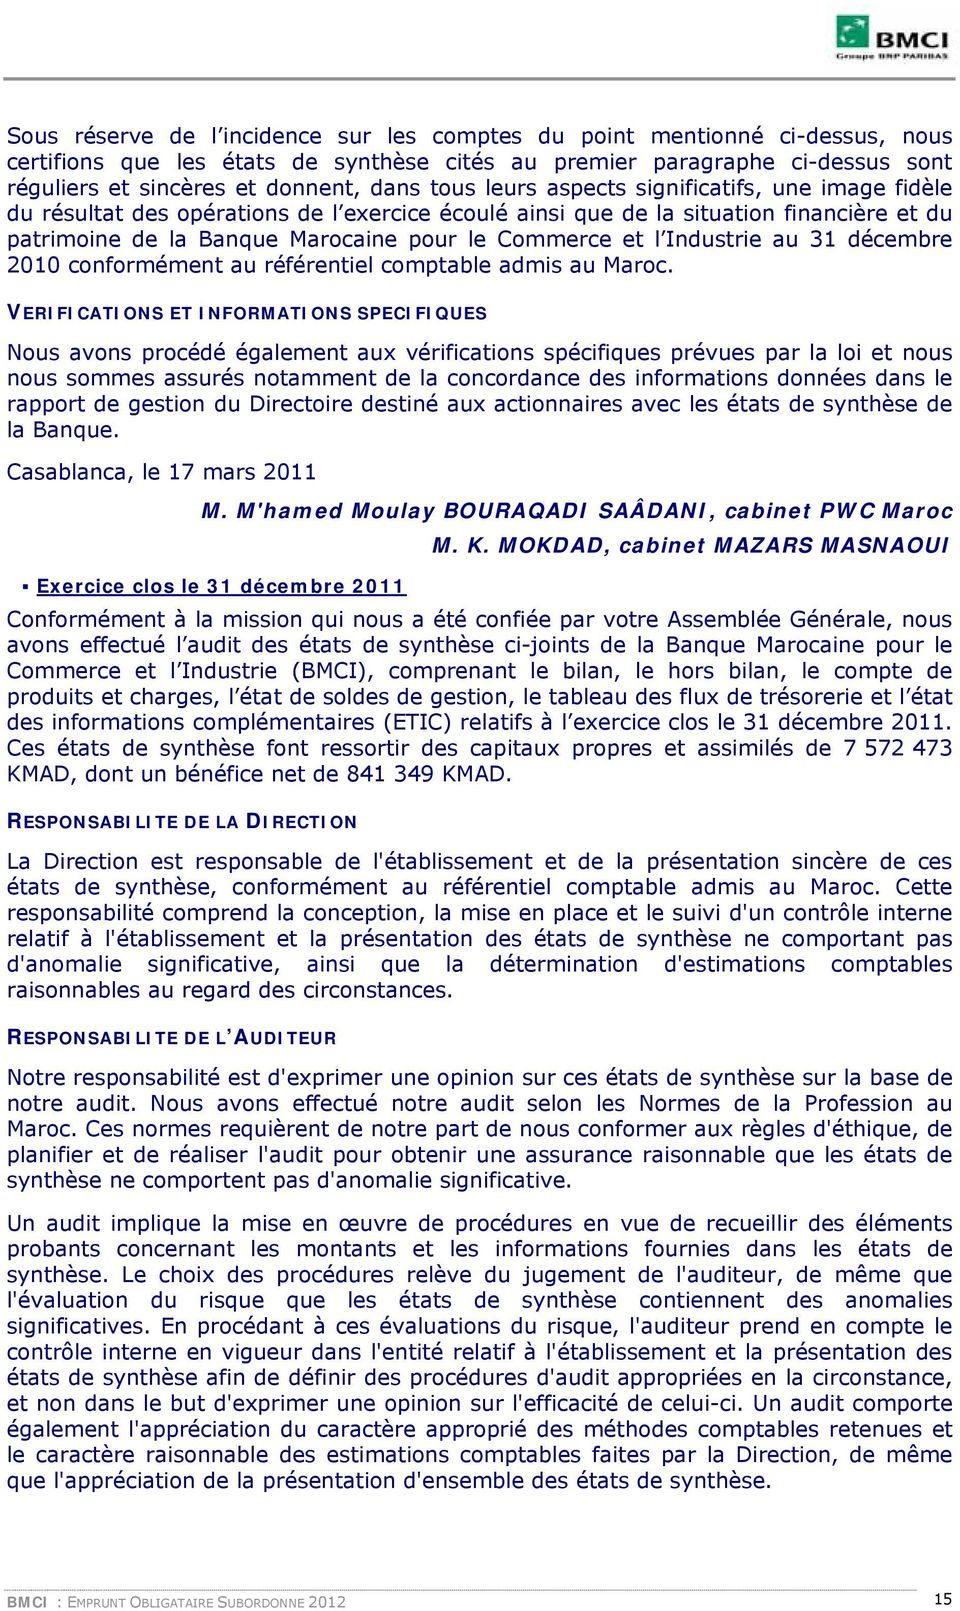 Industrie au 31 décembre 2010 conformément au référentiel comptable admis au Maroc.